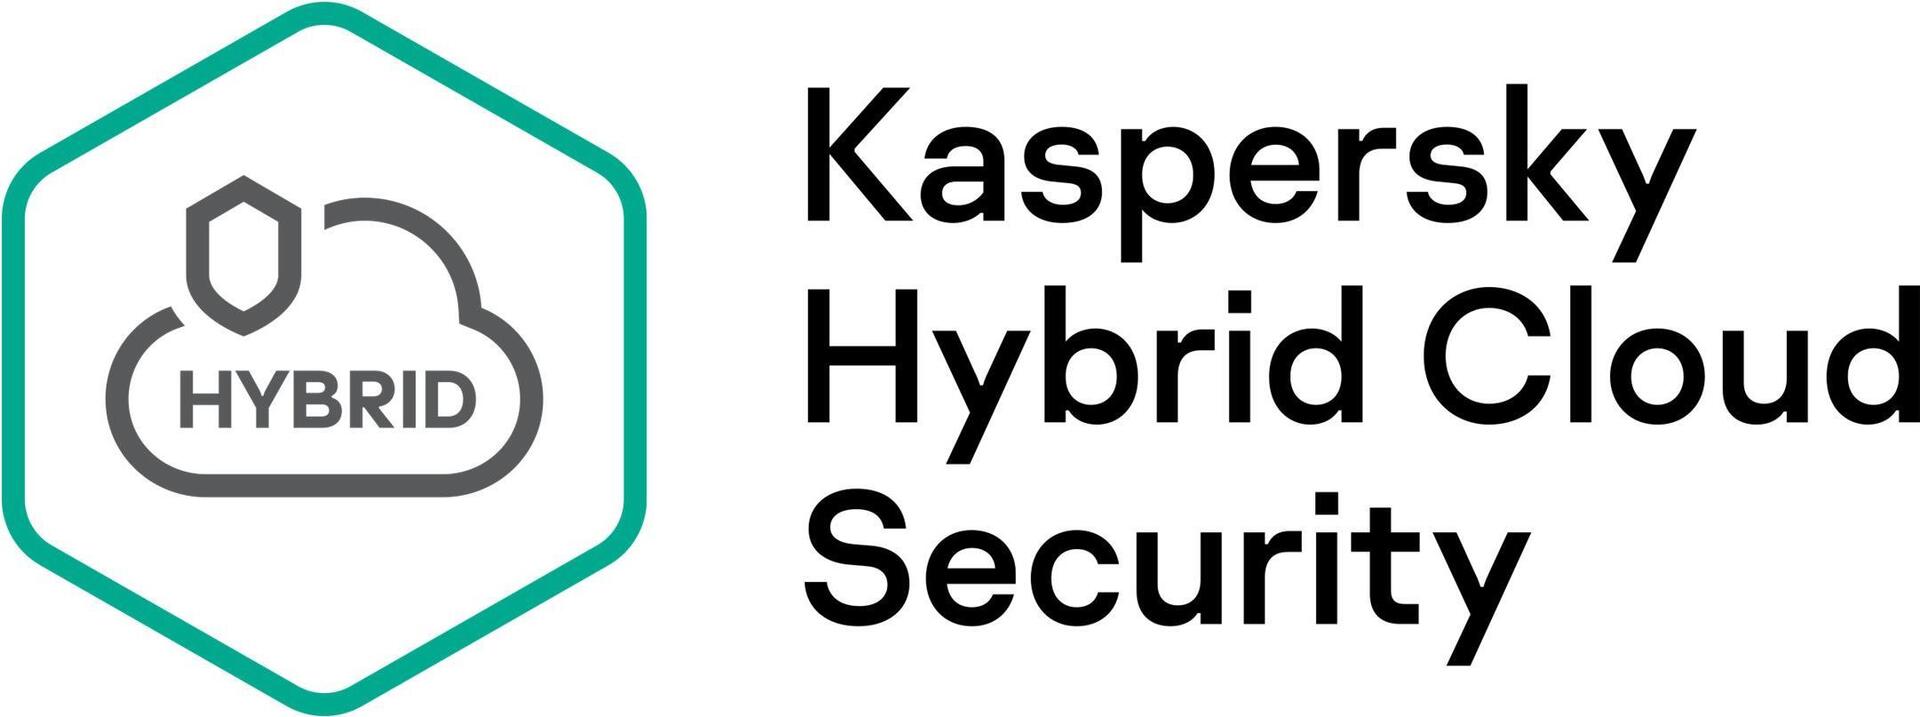 Kaspersky Hybrid Cloud Security Enterprise Edition, Desktop (KL4153XASDR)